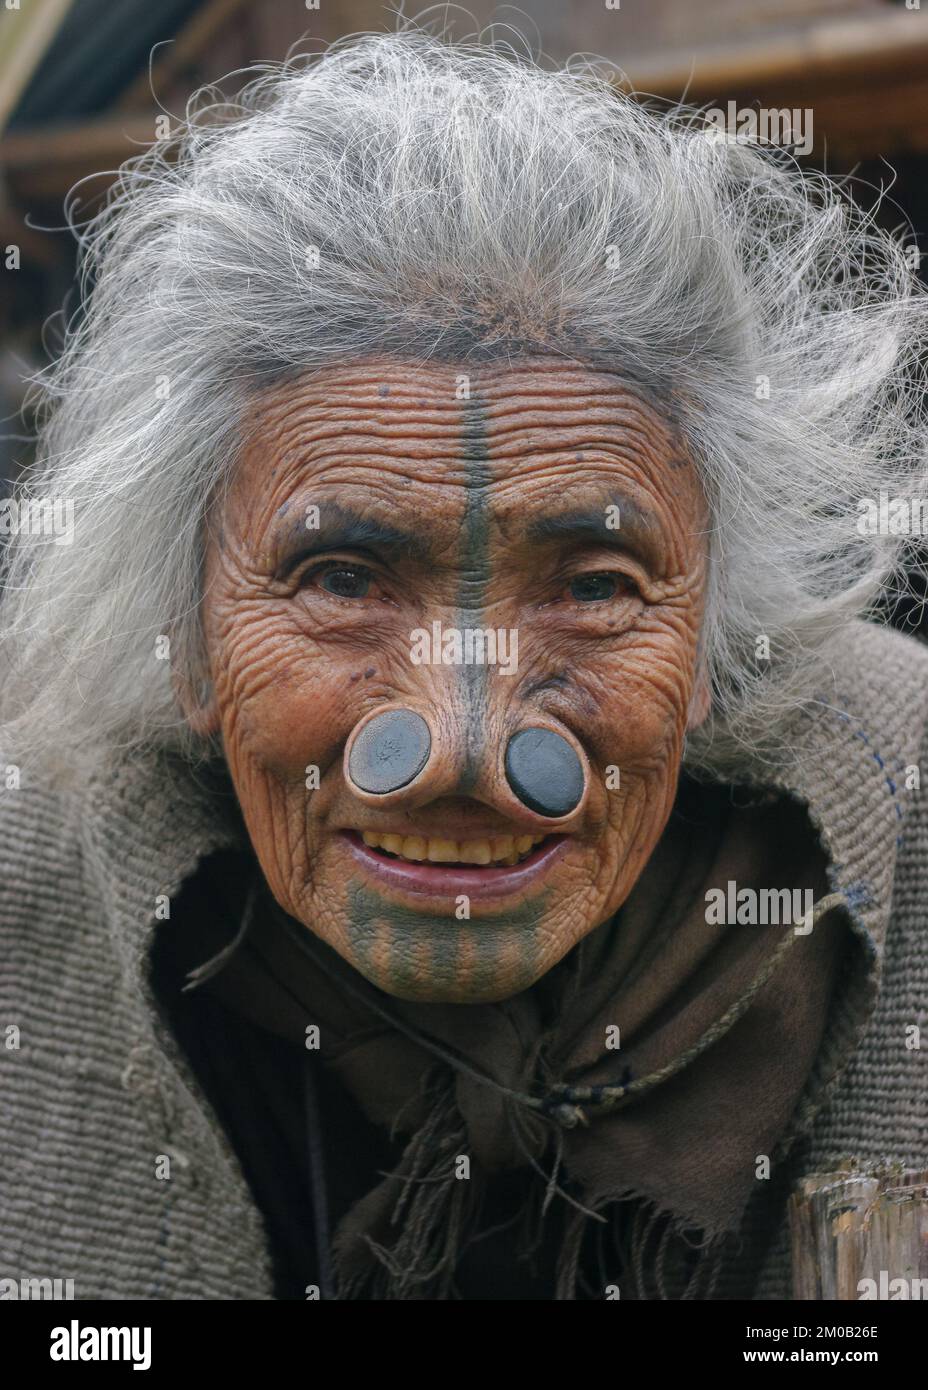 Ziro, Arunachal Pradesh, Inde - 11 13 2010 : gros plan portrait d'une vieille femme tribale d'Apatani souriante avec tatouages faciaux traditionnels et prises de nez Banque D'Images